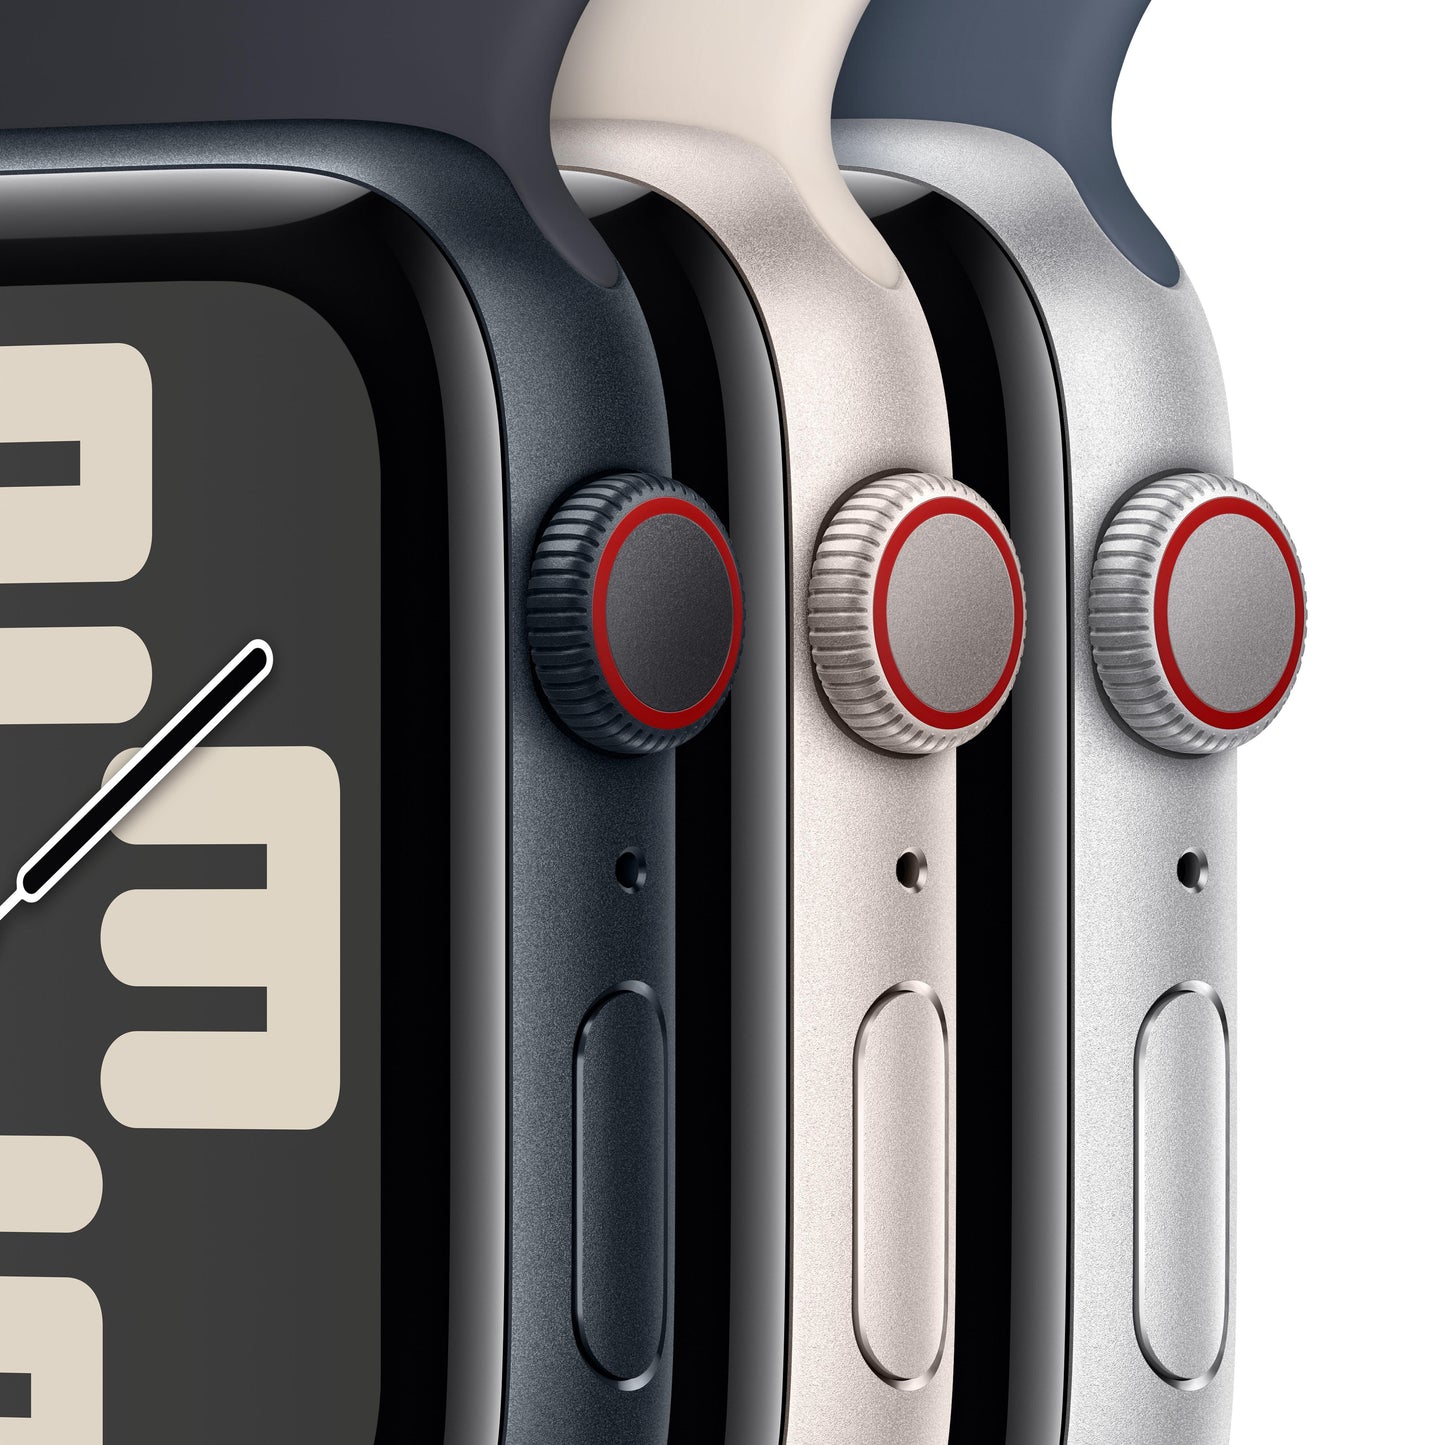 Apple Watch SE (GPS + Cellular) - Caja de aluminio en blanco estrella de 40 mm - Correa deportiva blanco estrella - Talla M/L